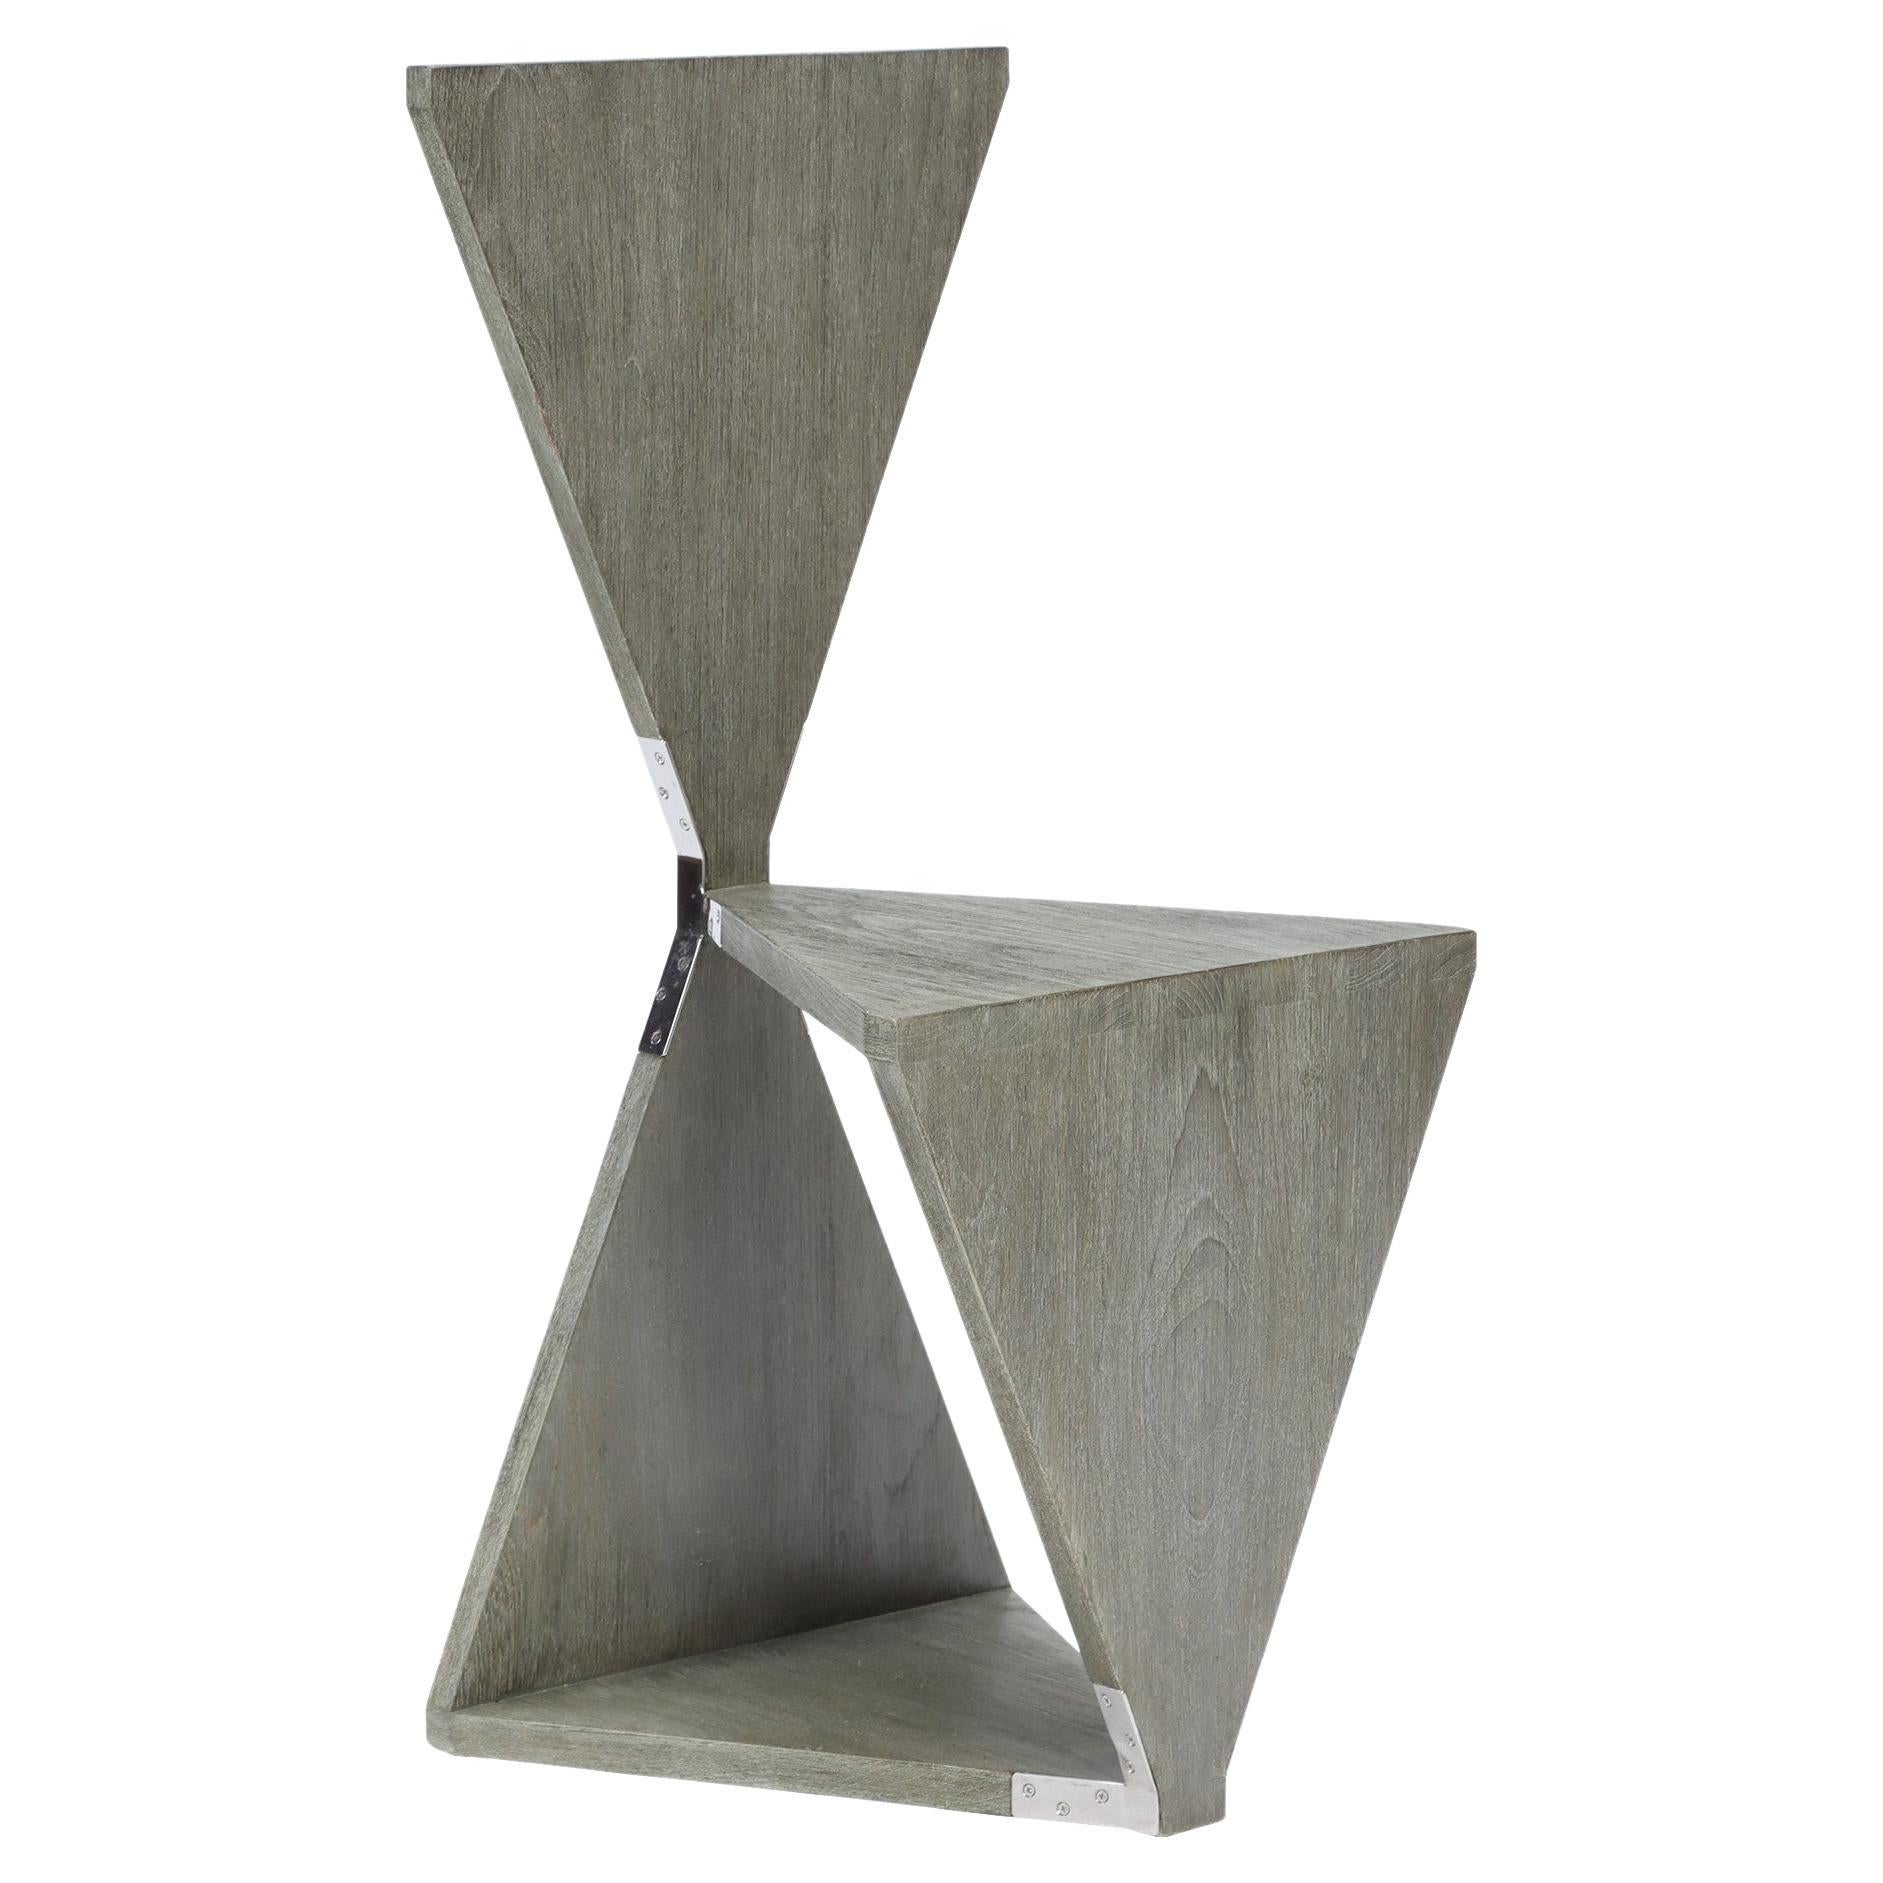 "Elfenbein" Grey Wash Teak Chair Designed by Maximilian Eicke for Max ID NY